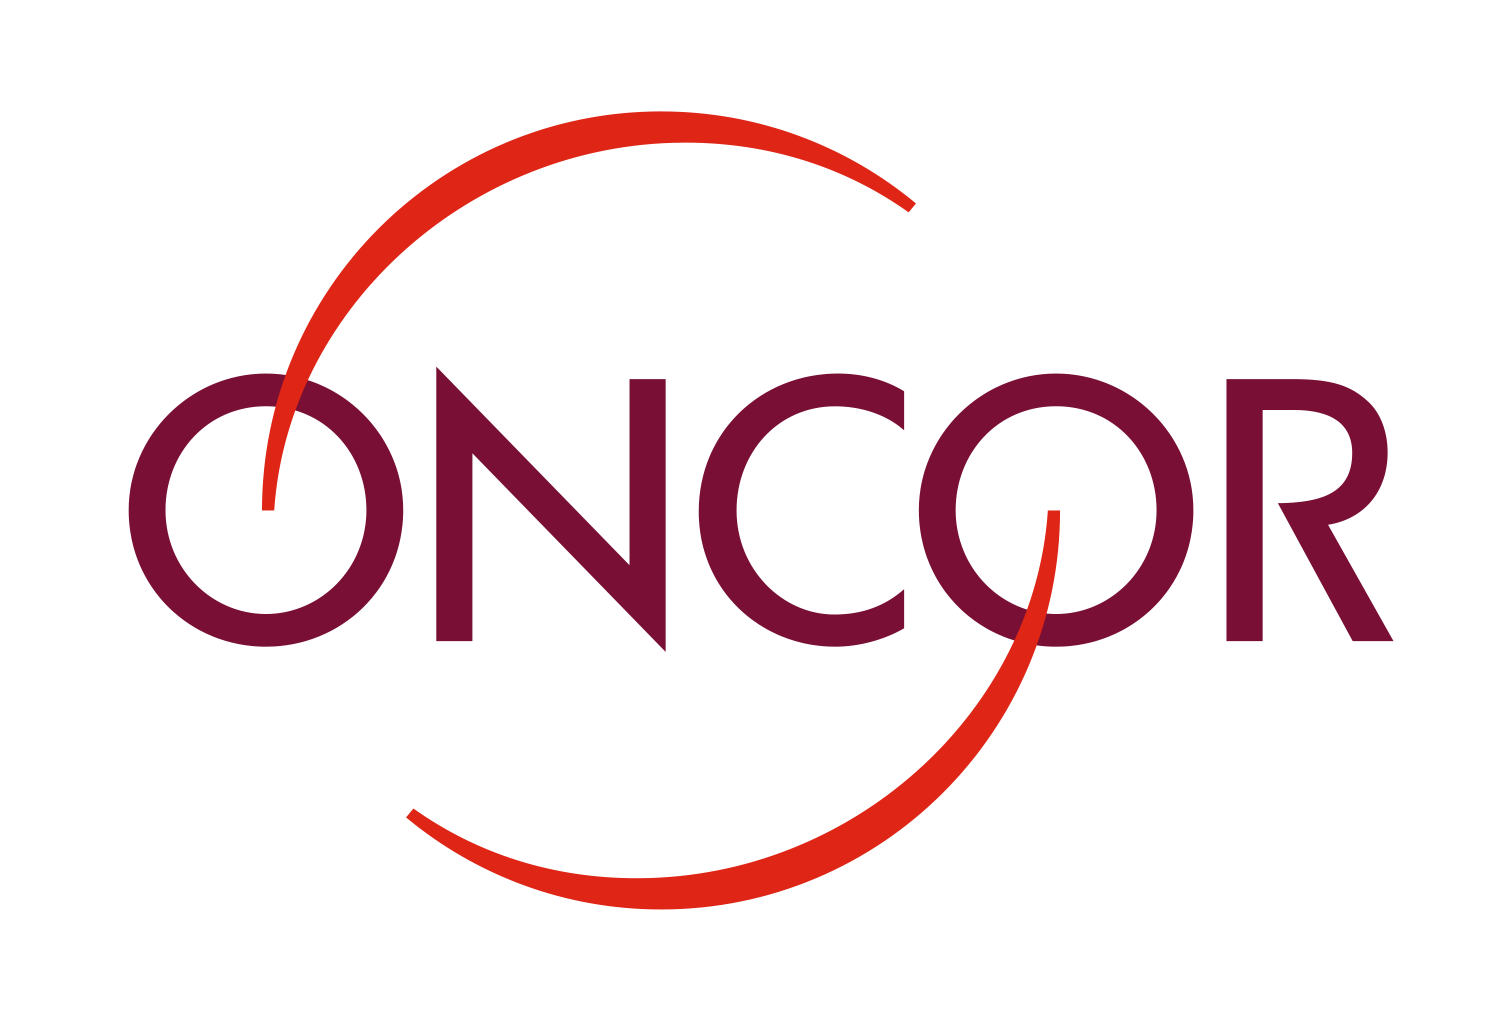 Oncor Logo